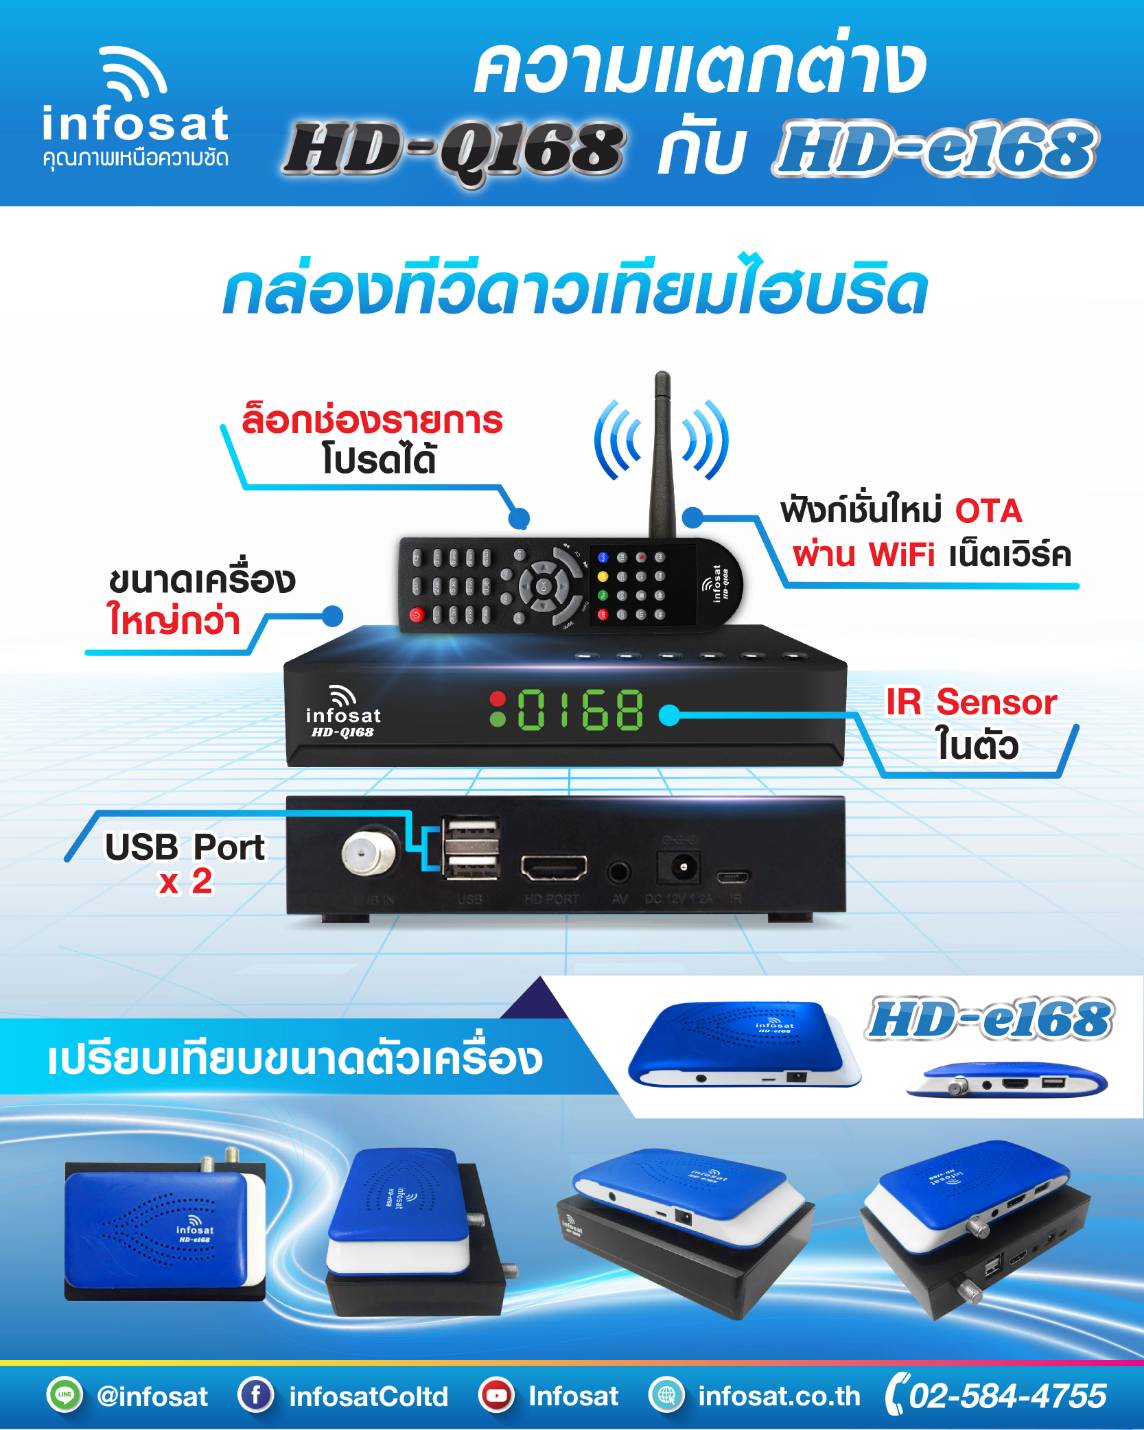 มุมมองเพิ่มเติมของสินค้า INFOSAT HD-Q168 กล่องทีวีดาวเทียมไฮบริด (ใช้งานได้ทั้งระบบ C/KU/WiFi) เลือกได้ตามชุด